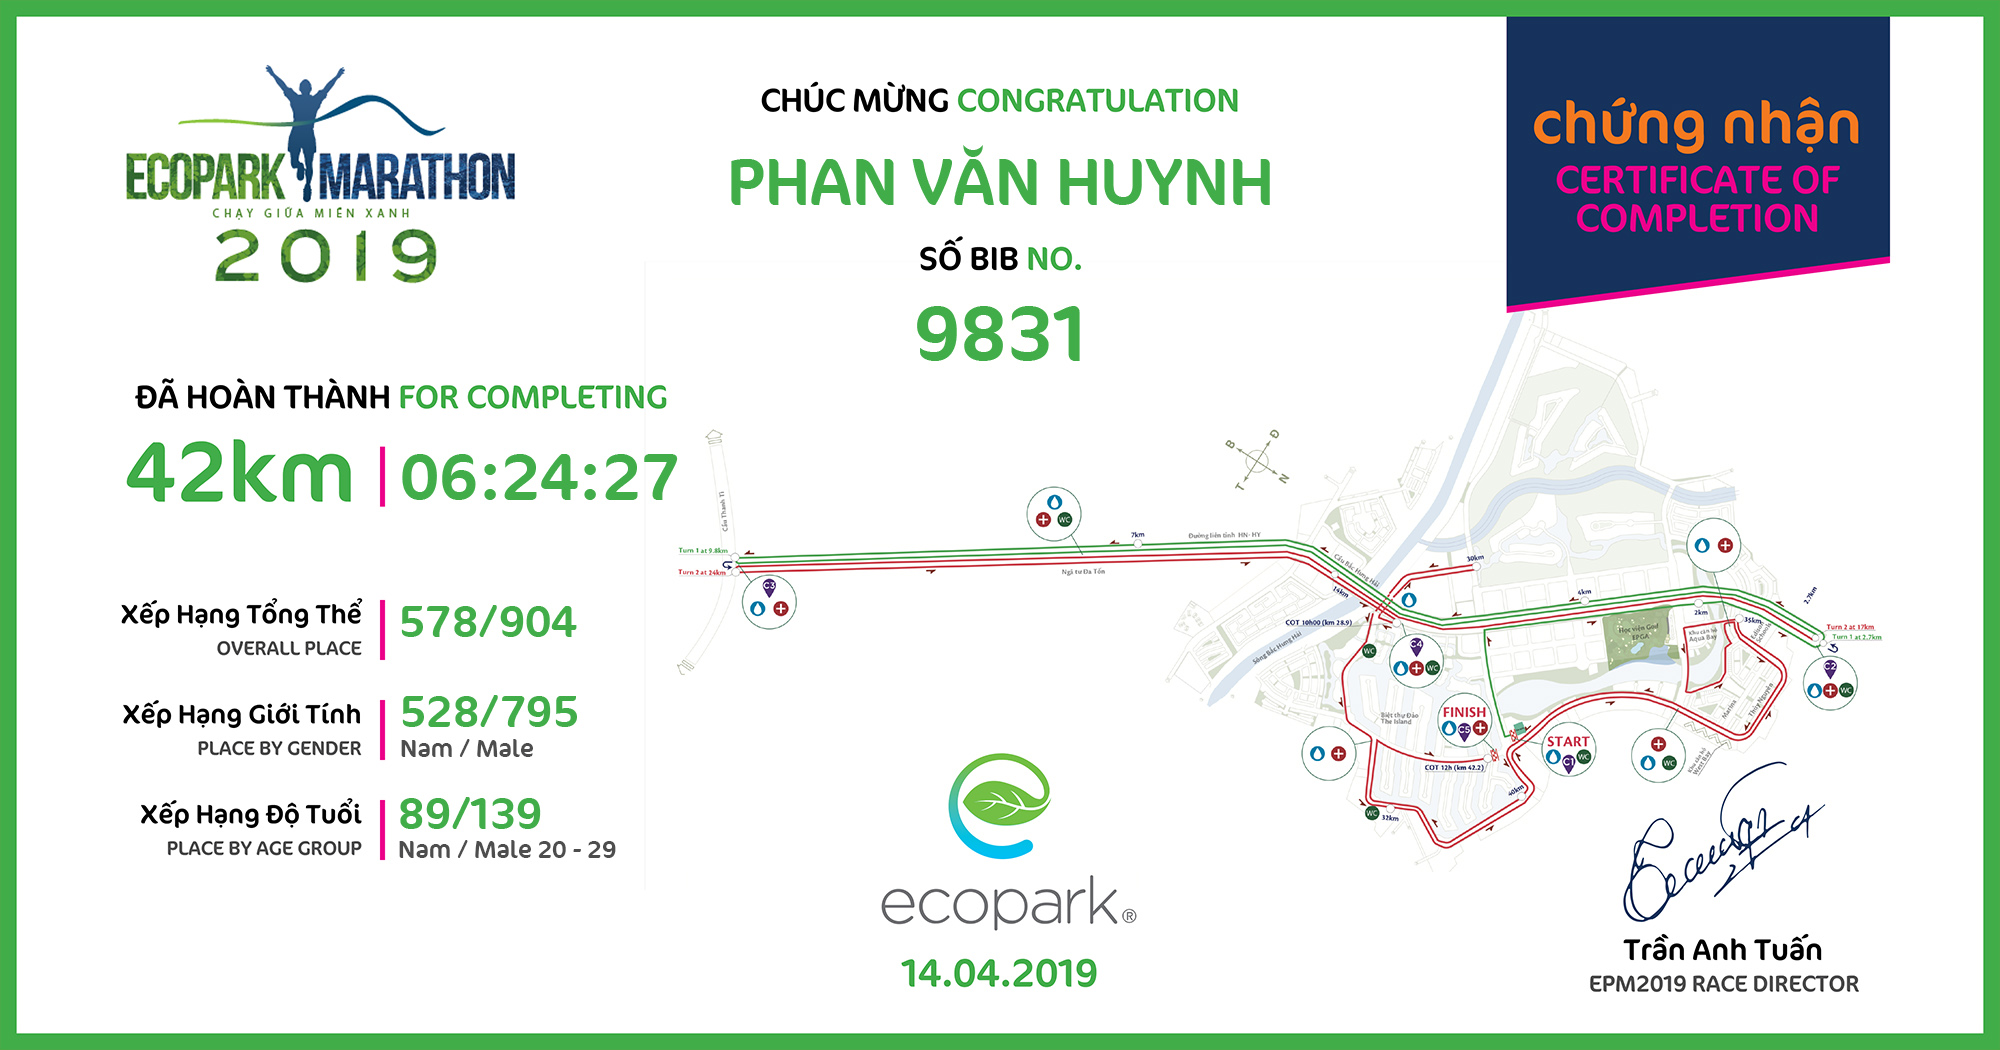 9831 - Phan Văn Huynh